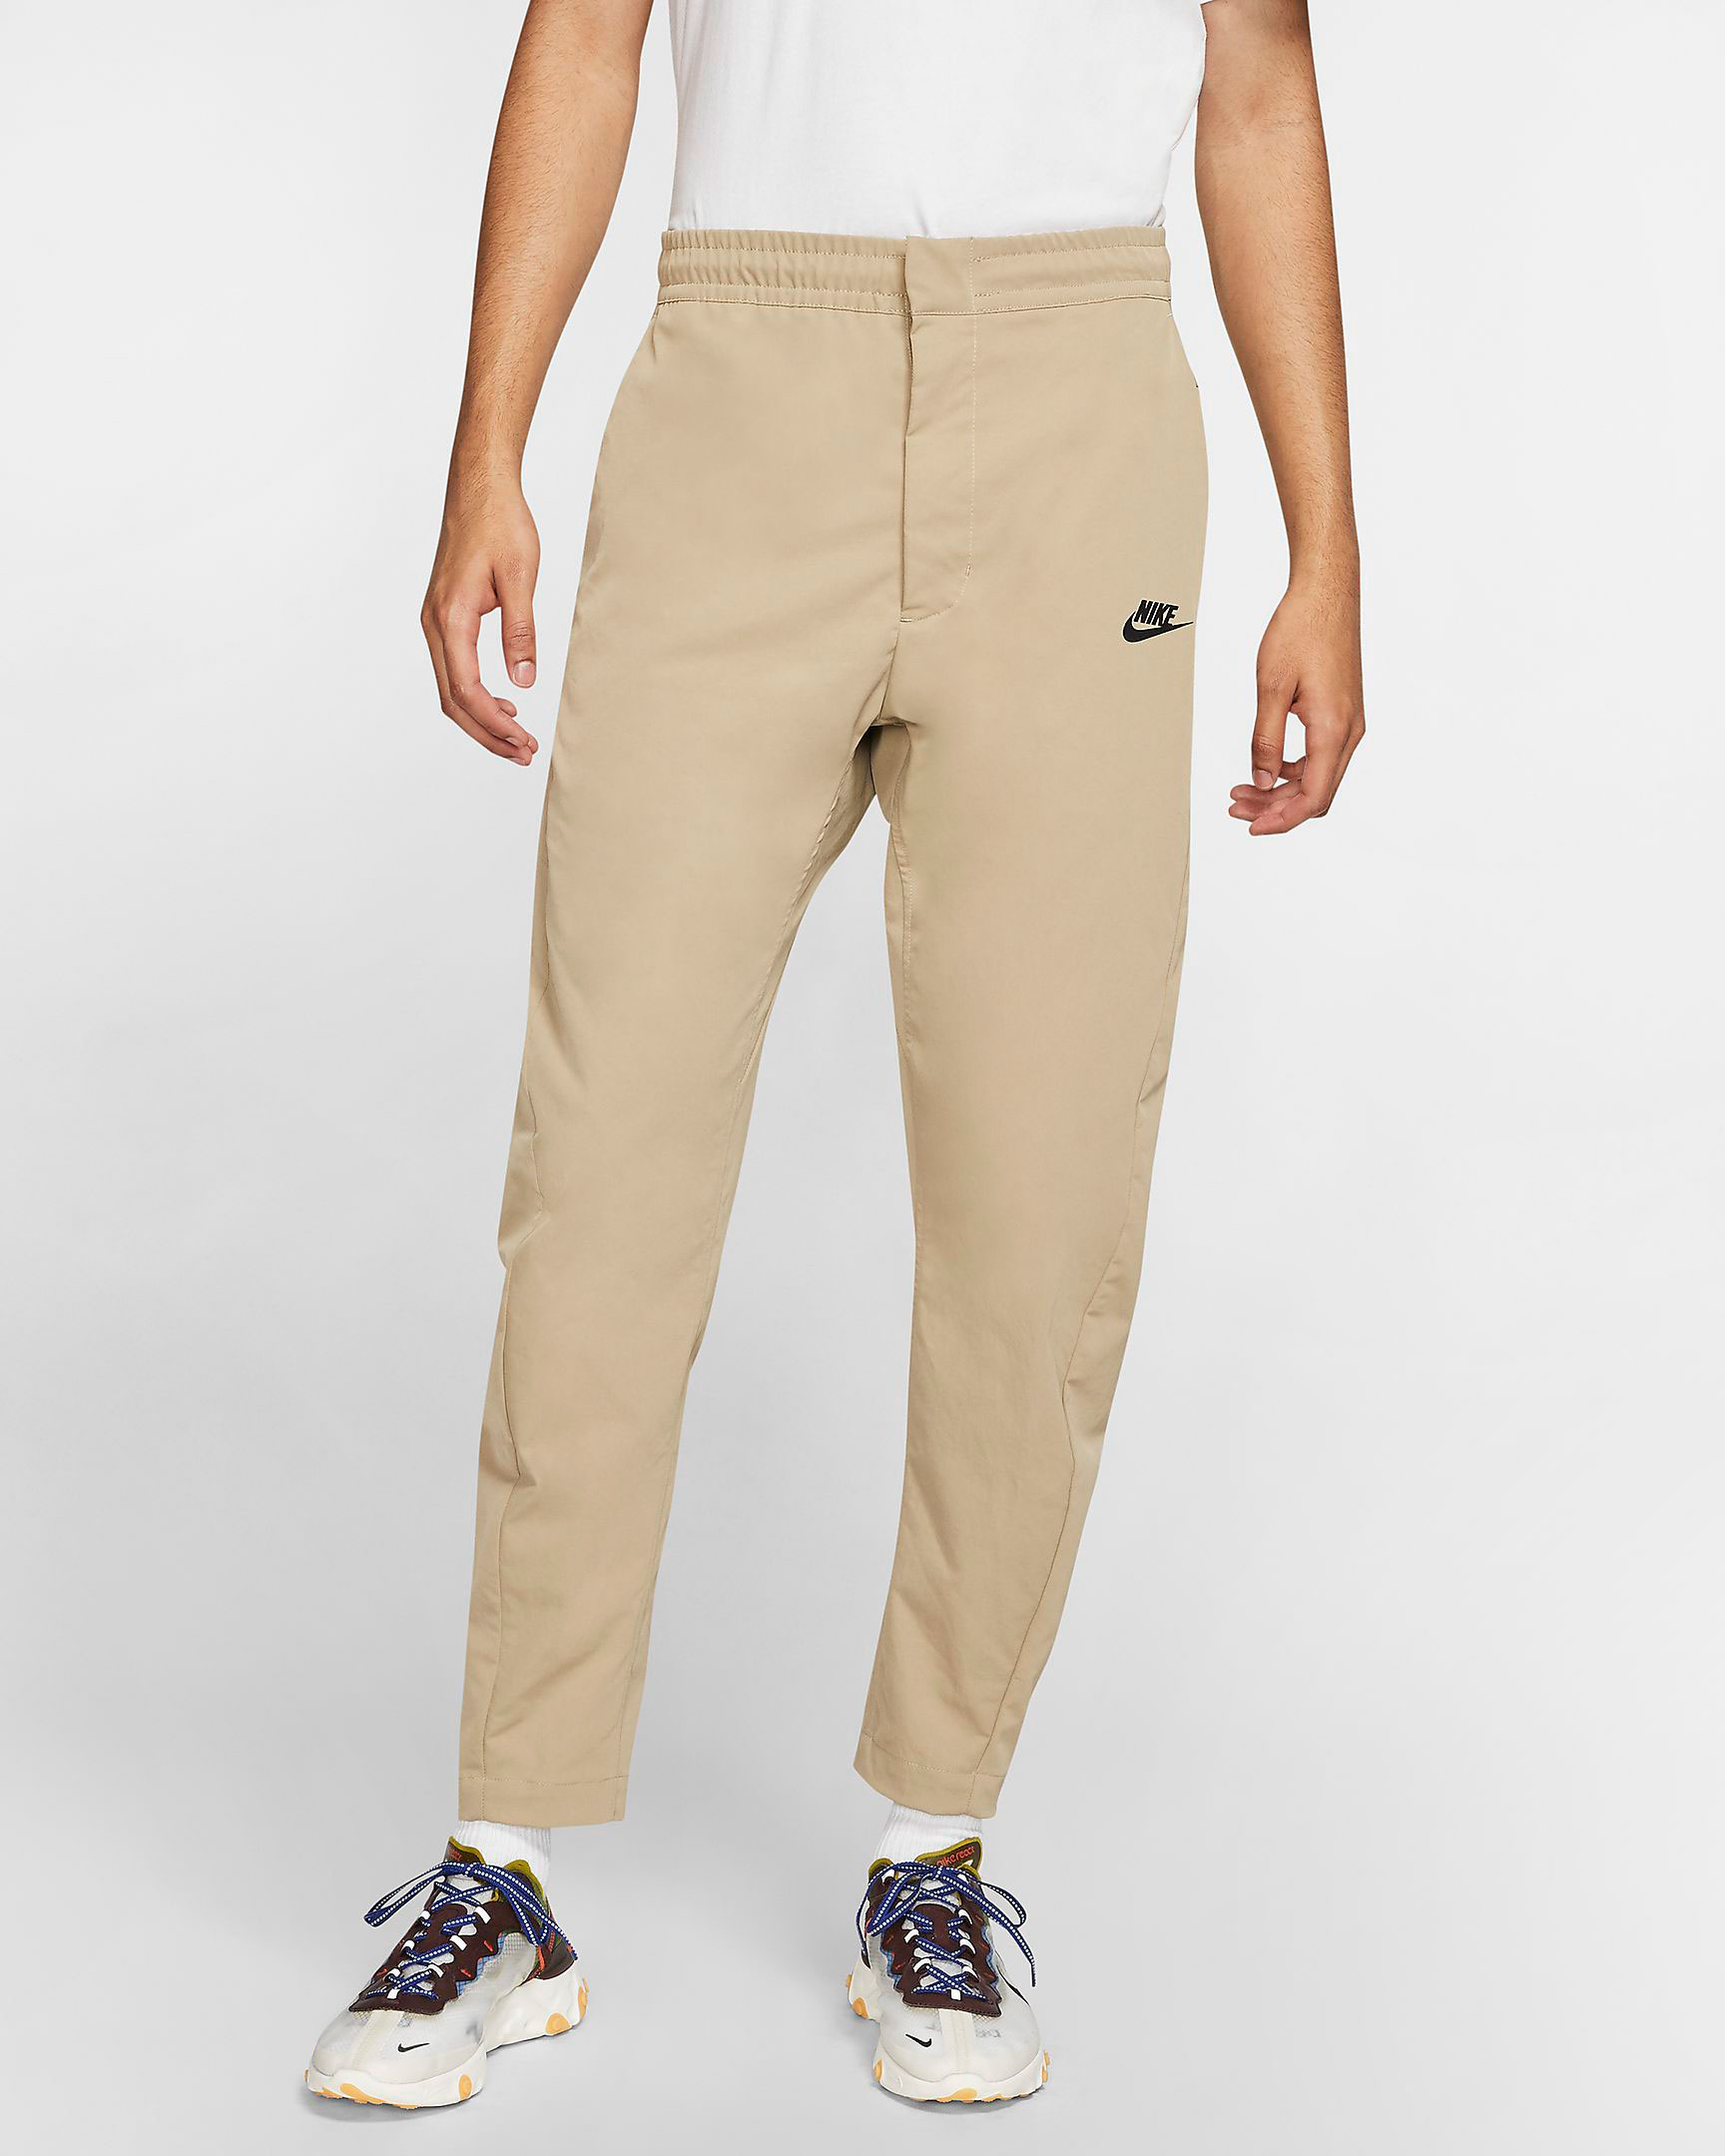 nike-sportswear-khaki-beige-pants